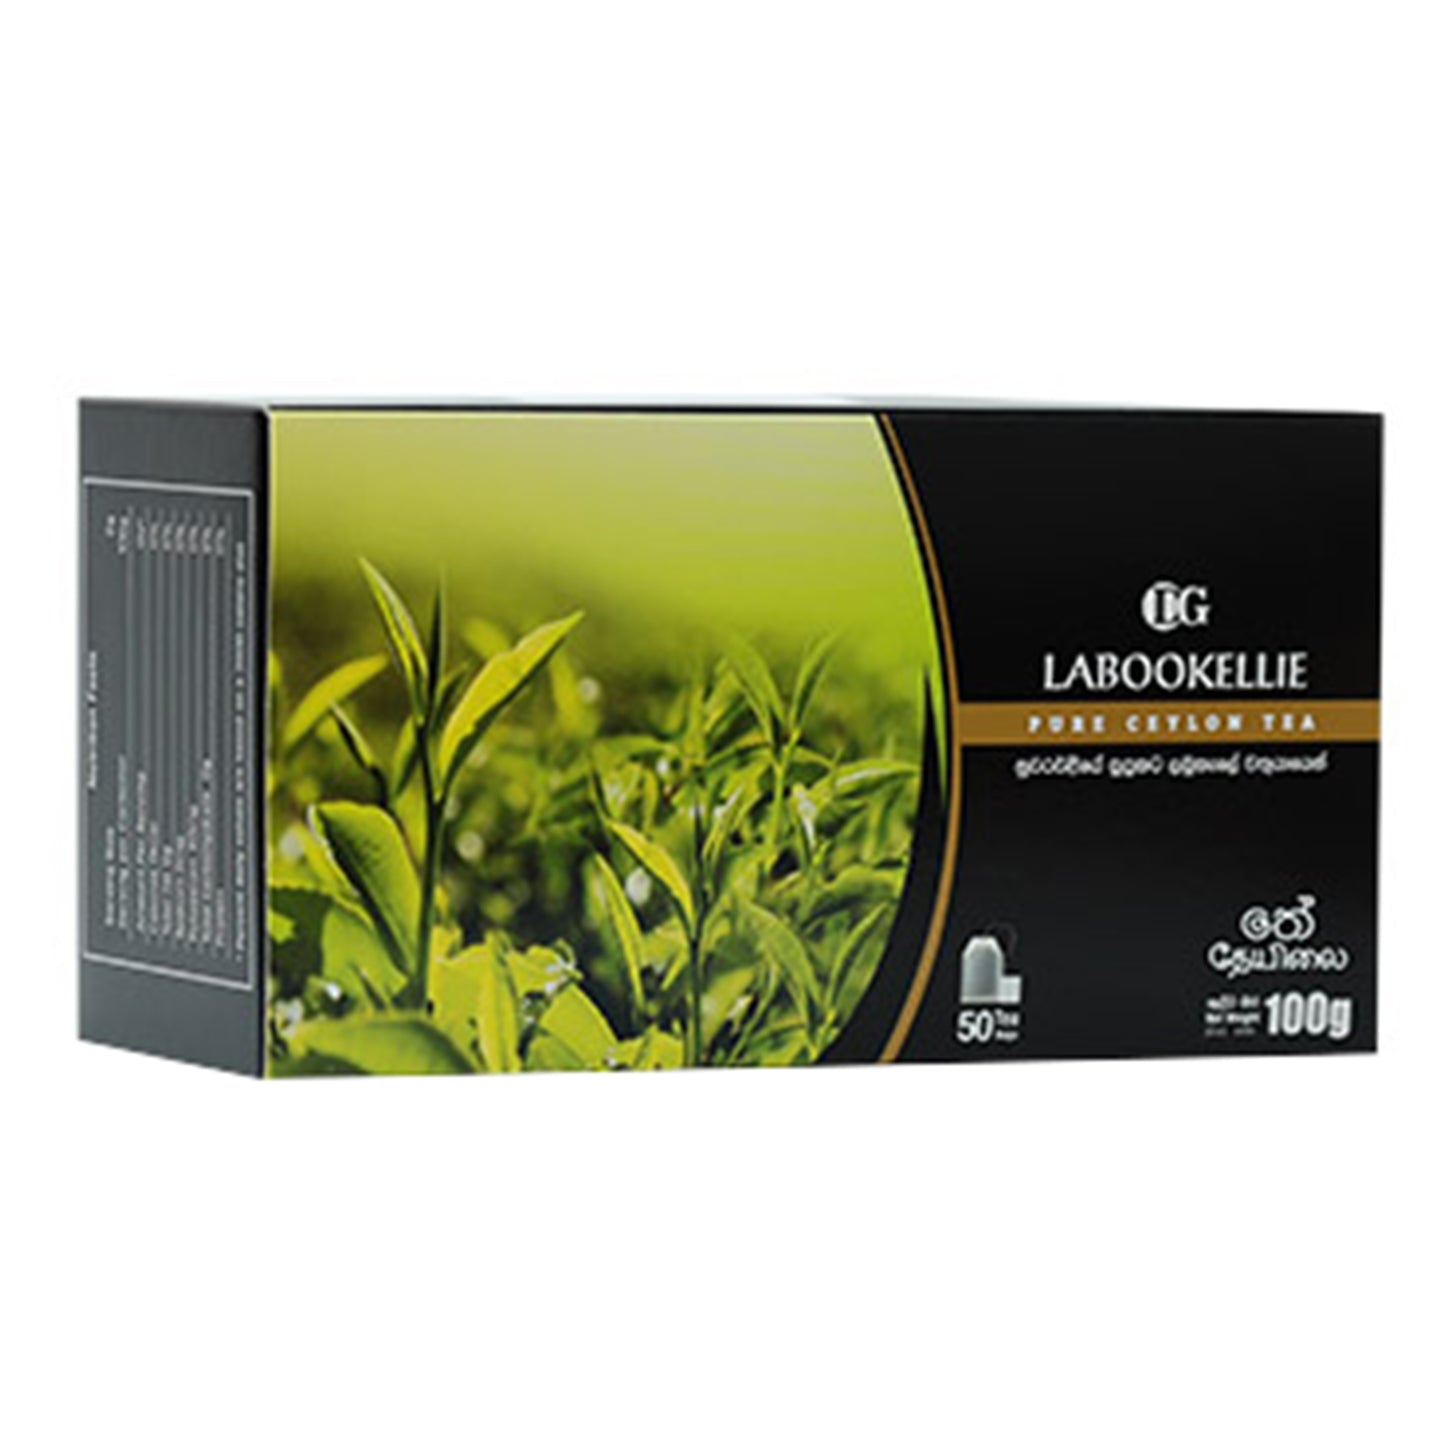 DG Labokellie Ceylon Black Tea (100g) 50 teekotid